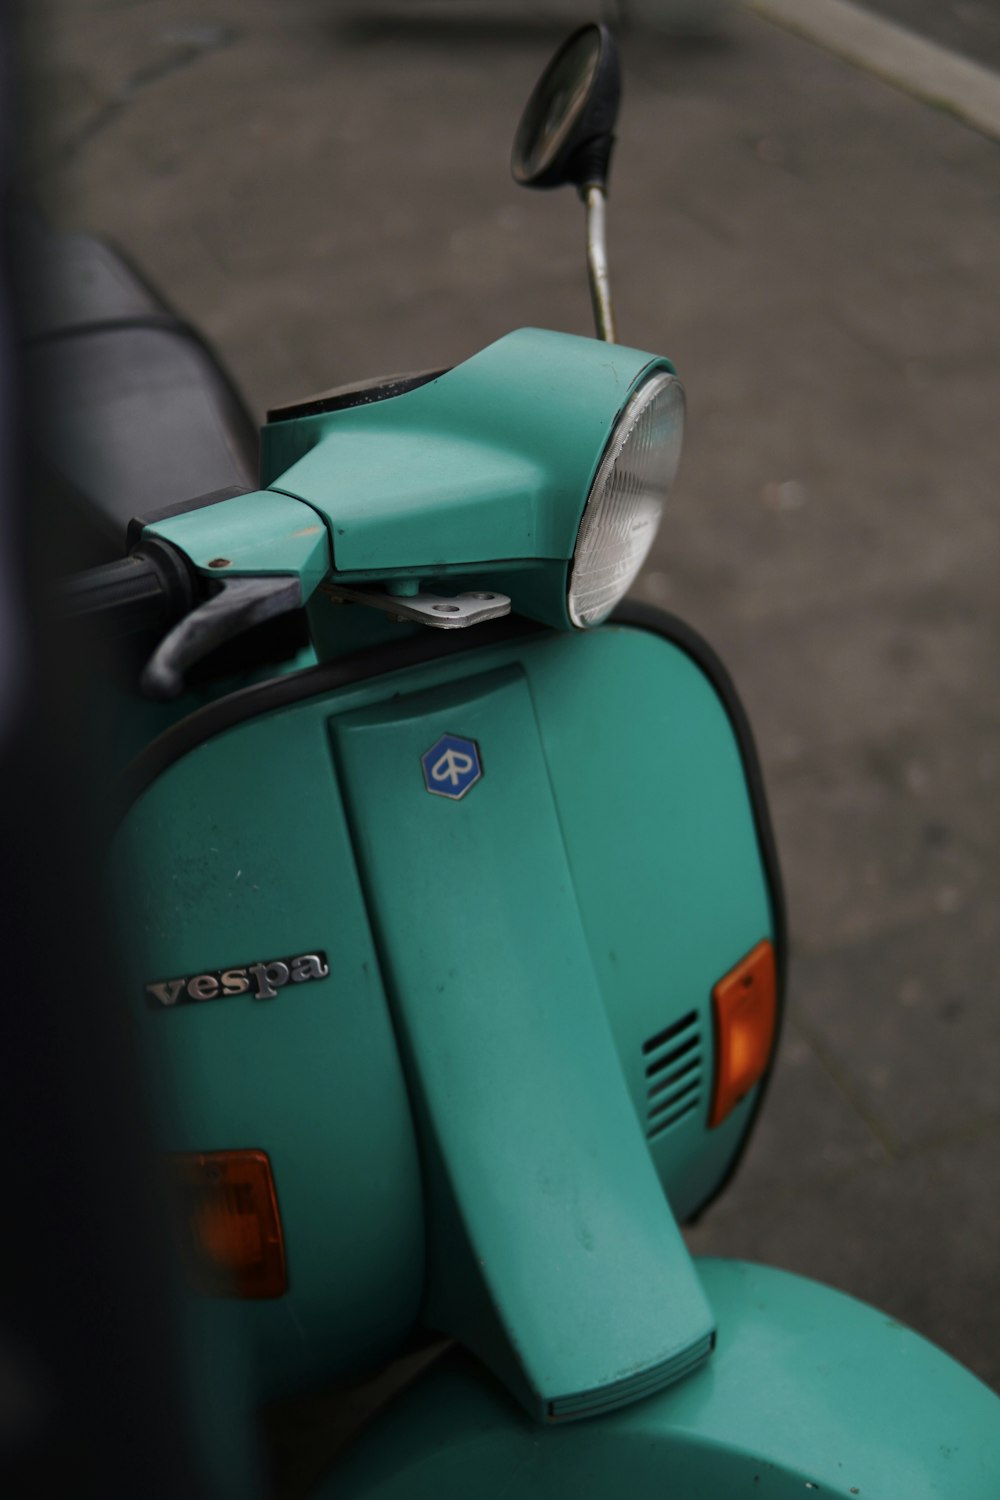 Un scooter verde estacionado al costado de la carretera